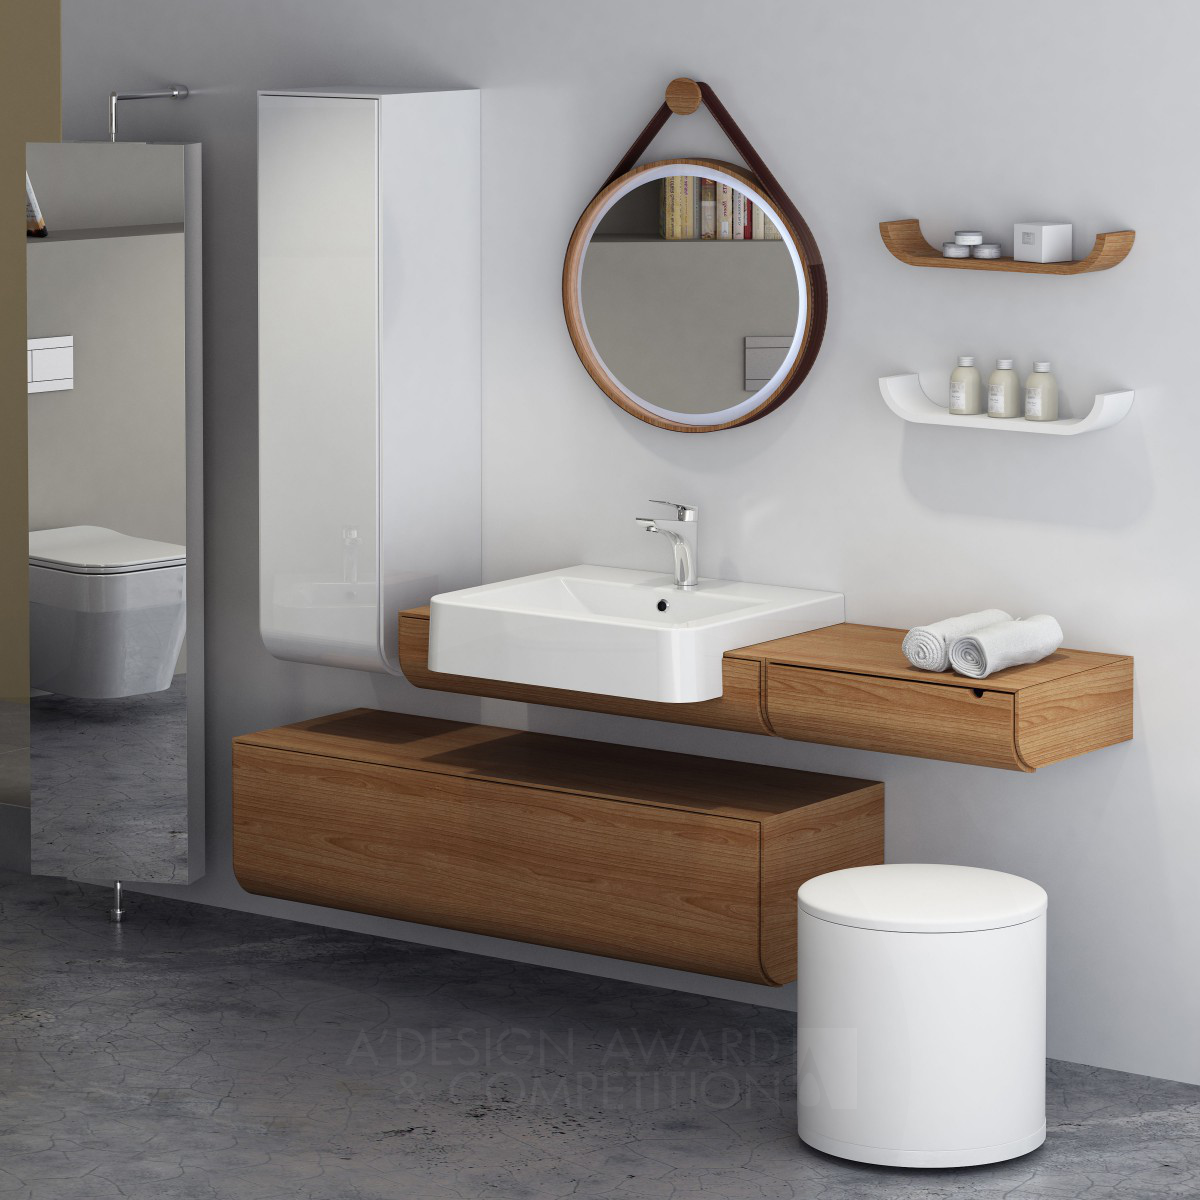 Isvea Eurasia Bathroom Furniture